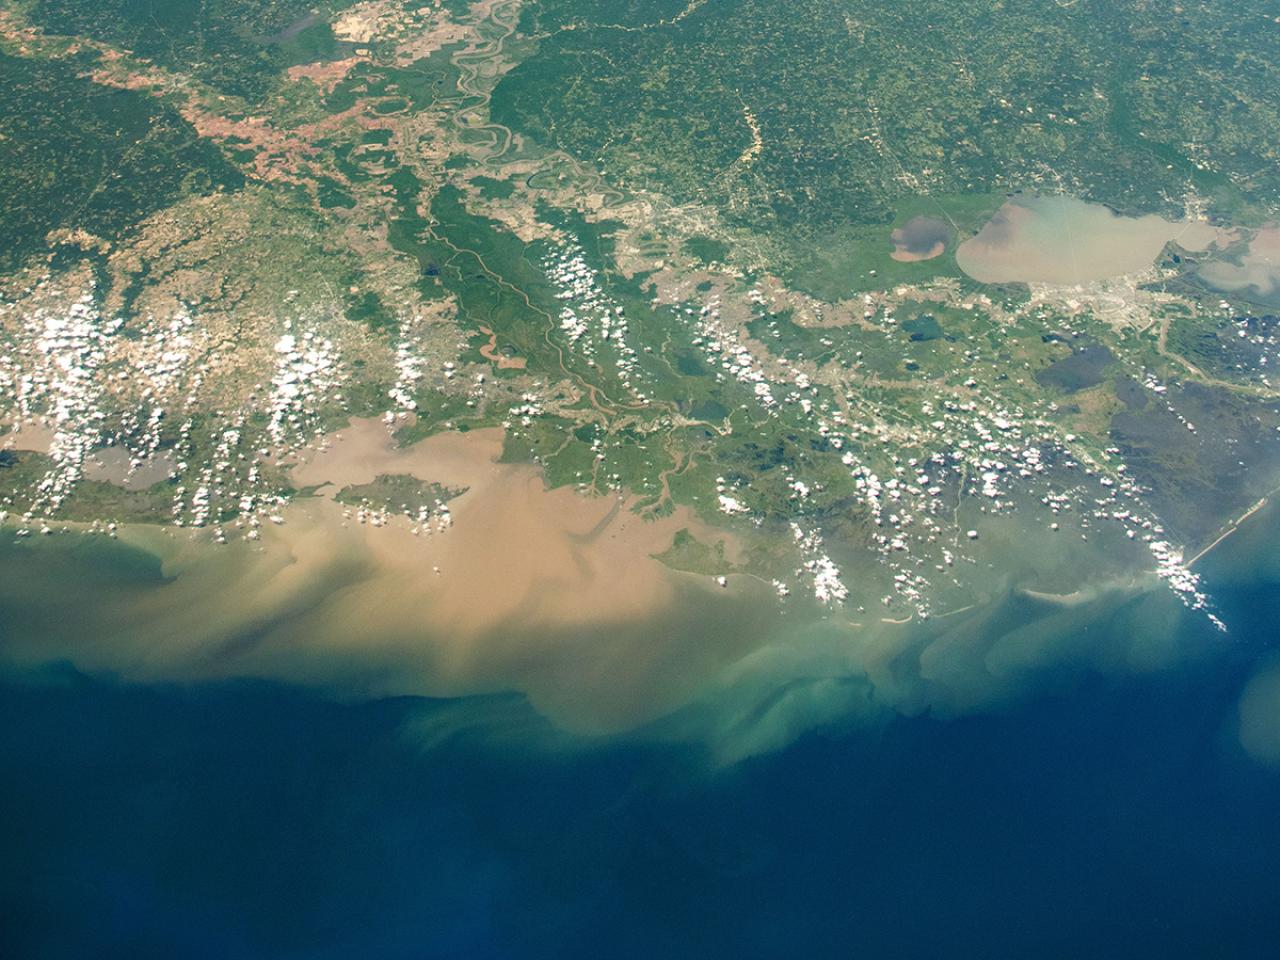 Sediment in the Gulf